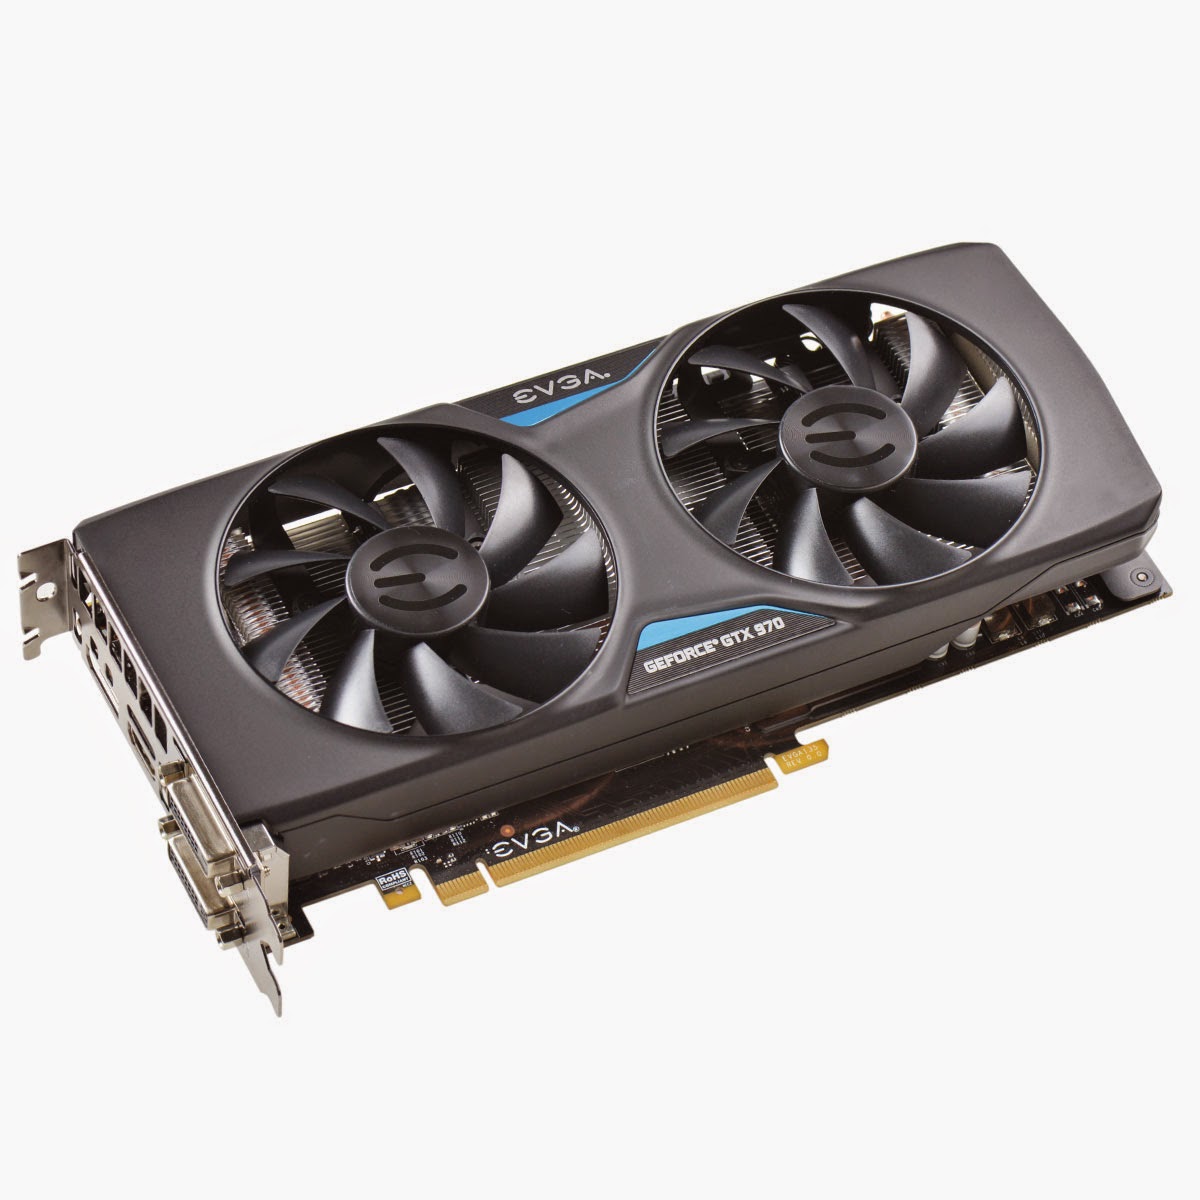 EVGA GeForce GTX 980 και 970 GPUs - Φωτογραφία 1